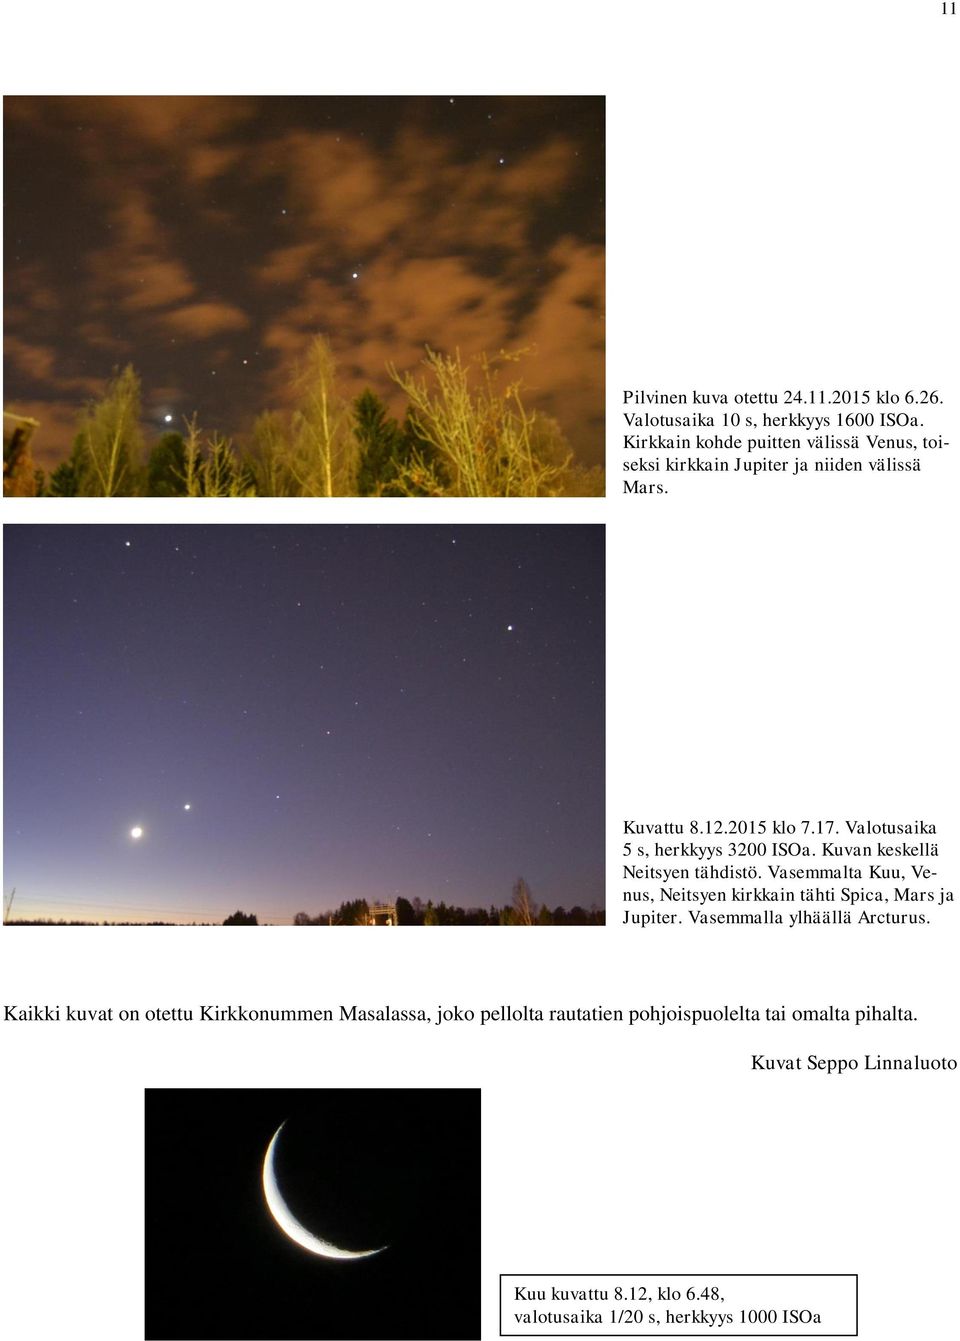 Valotusaika 5 s, herkkyys 3200 ISOa. Kuvan keskellä Neitsyen tähdistö. Vasemmalta Kuu, Venus, Neitsyen kirkkain tähti Spica, Mars ja Jupiter.